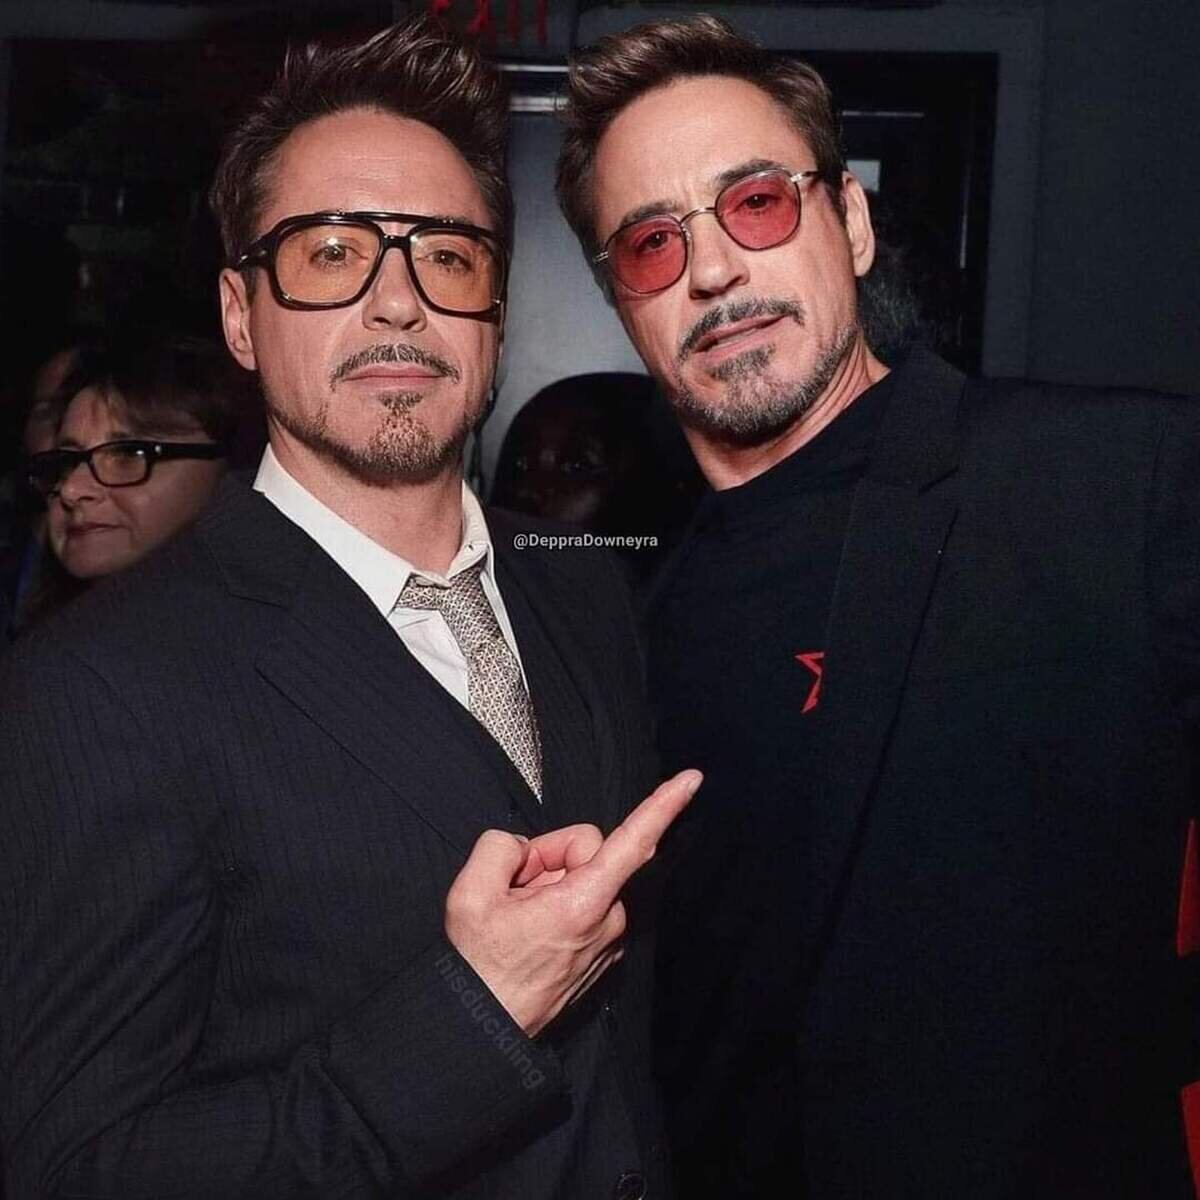 El día que Tony Stark conoció a Robert Downey Jr.